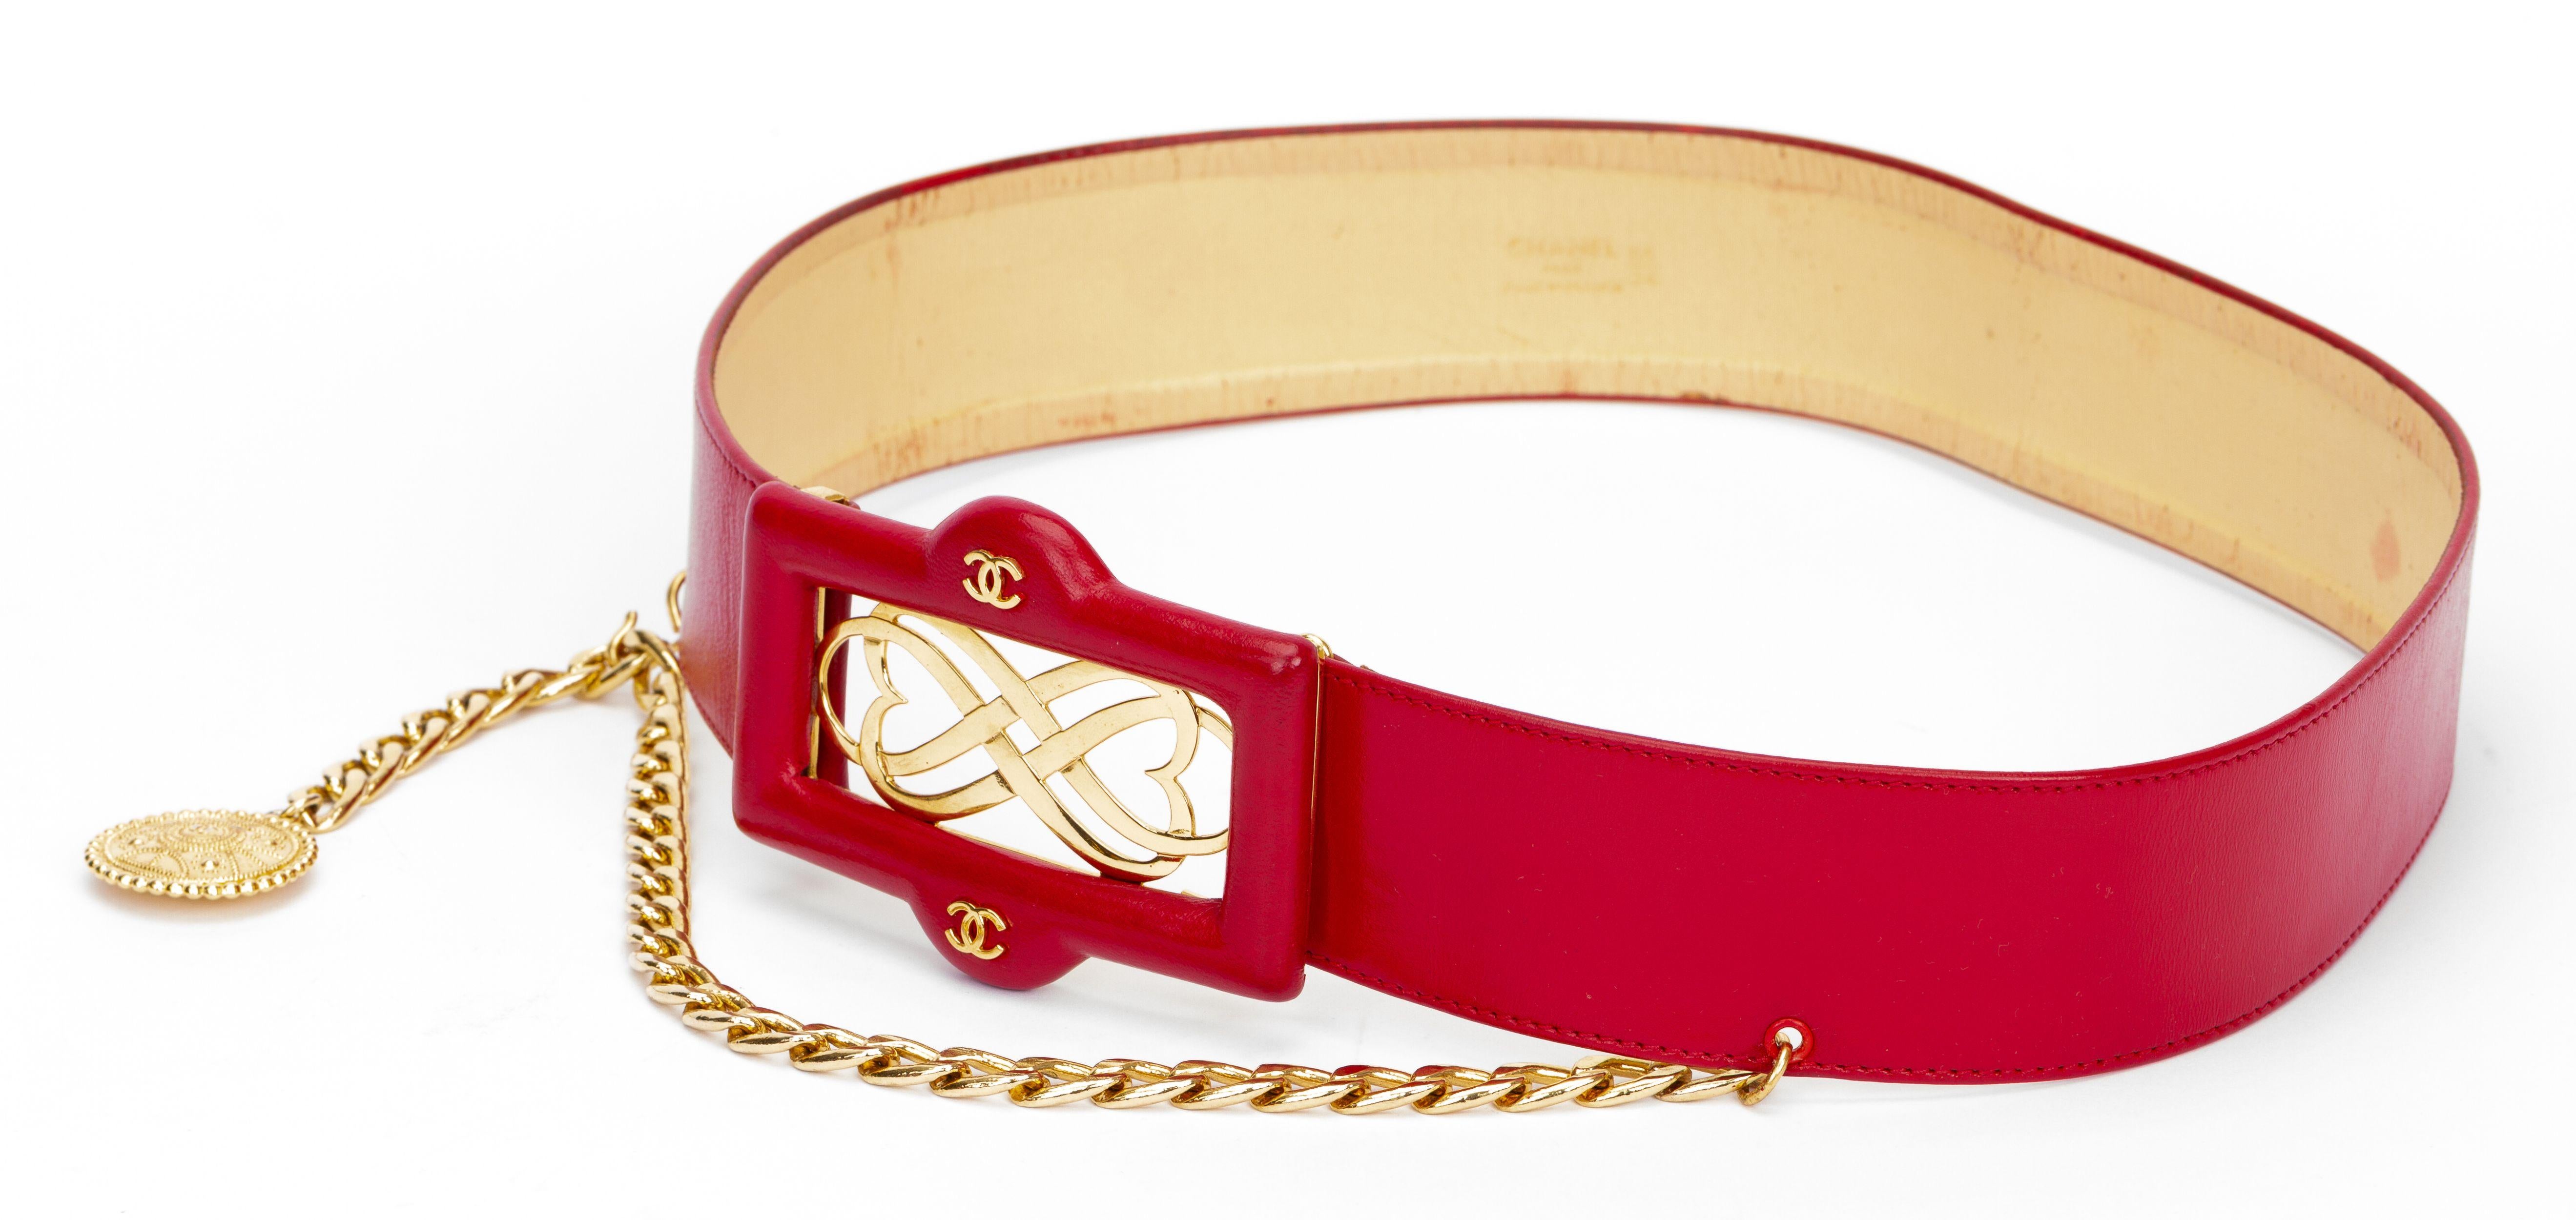 Chanel ausgezeichneter Zustand 80er Jahre roten Ledergürtel mit Logo Schnalle, Kette Tropfen mit Münze. Seltene große Größe 85cm/34